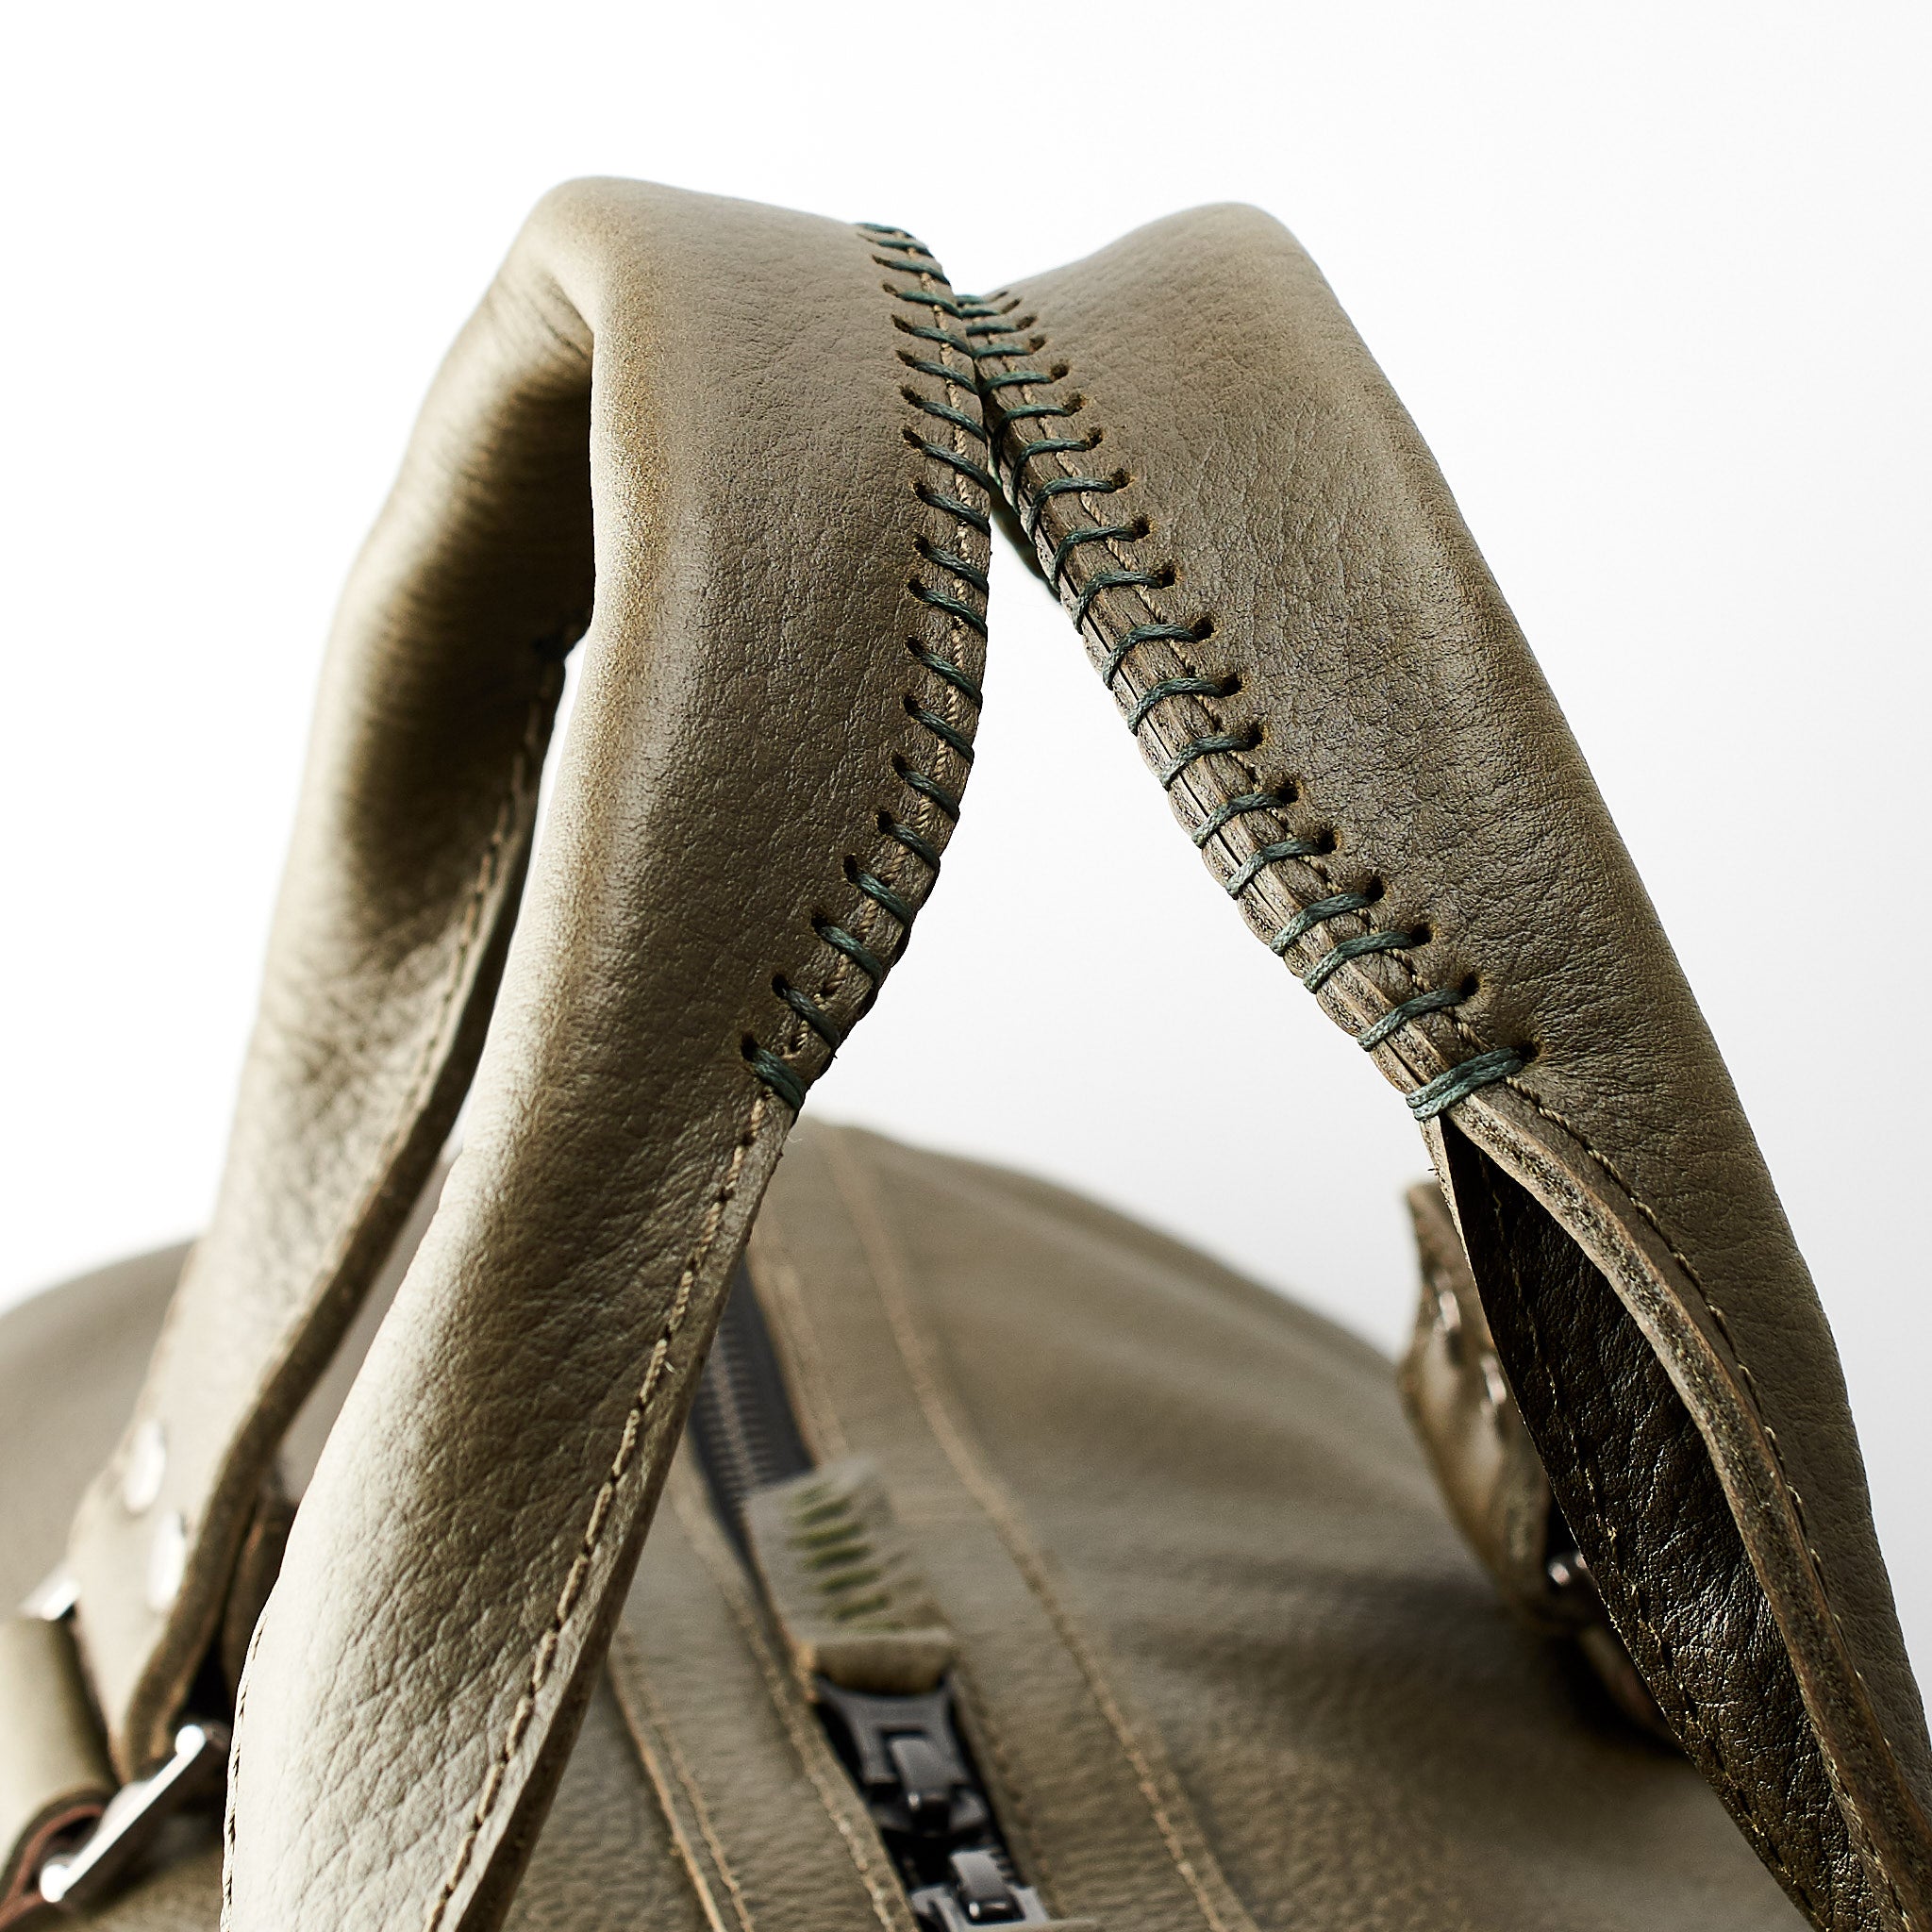 Substantial Duffle Bags, Weekenders & Gym Bag by Capra Leather